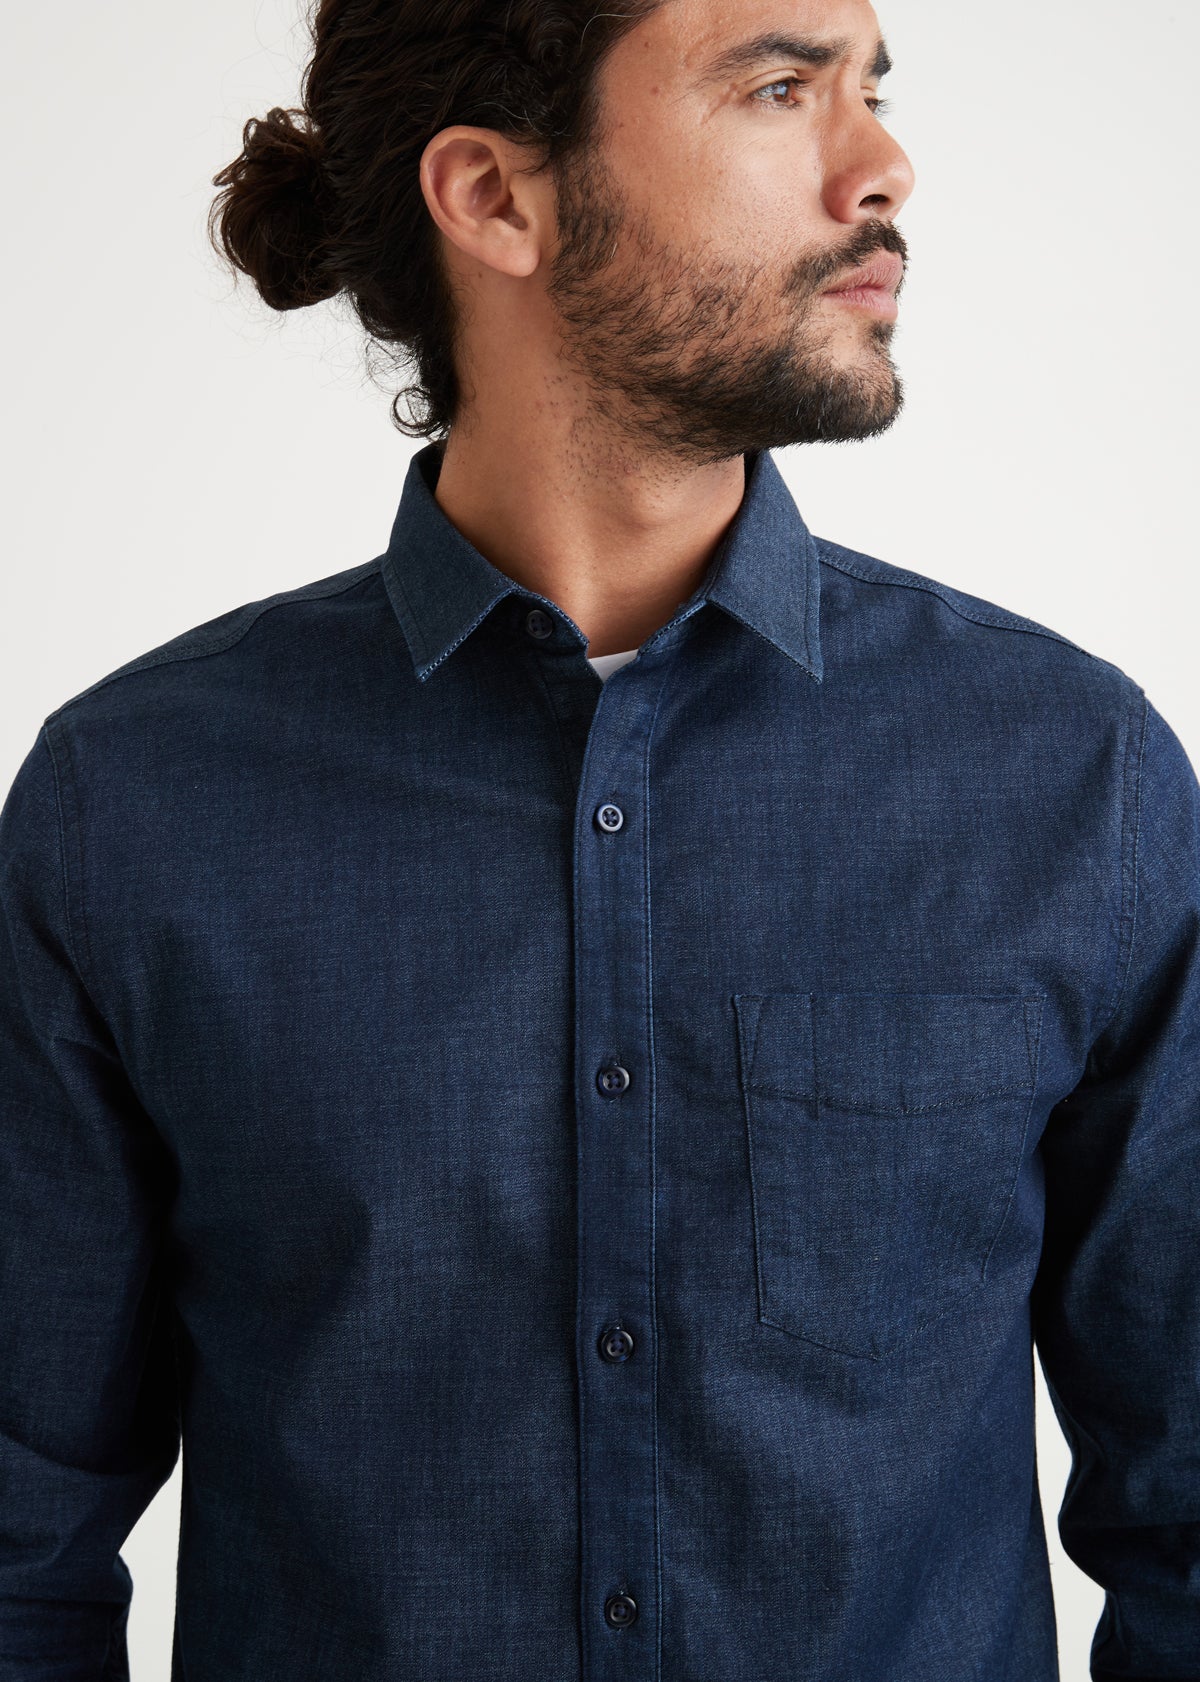 Men's Stretch Dark Wash Denim Button Up Shirt Detail